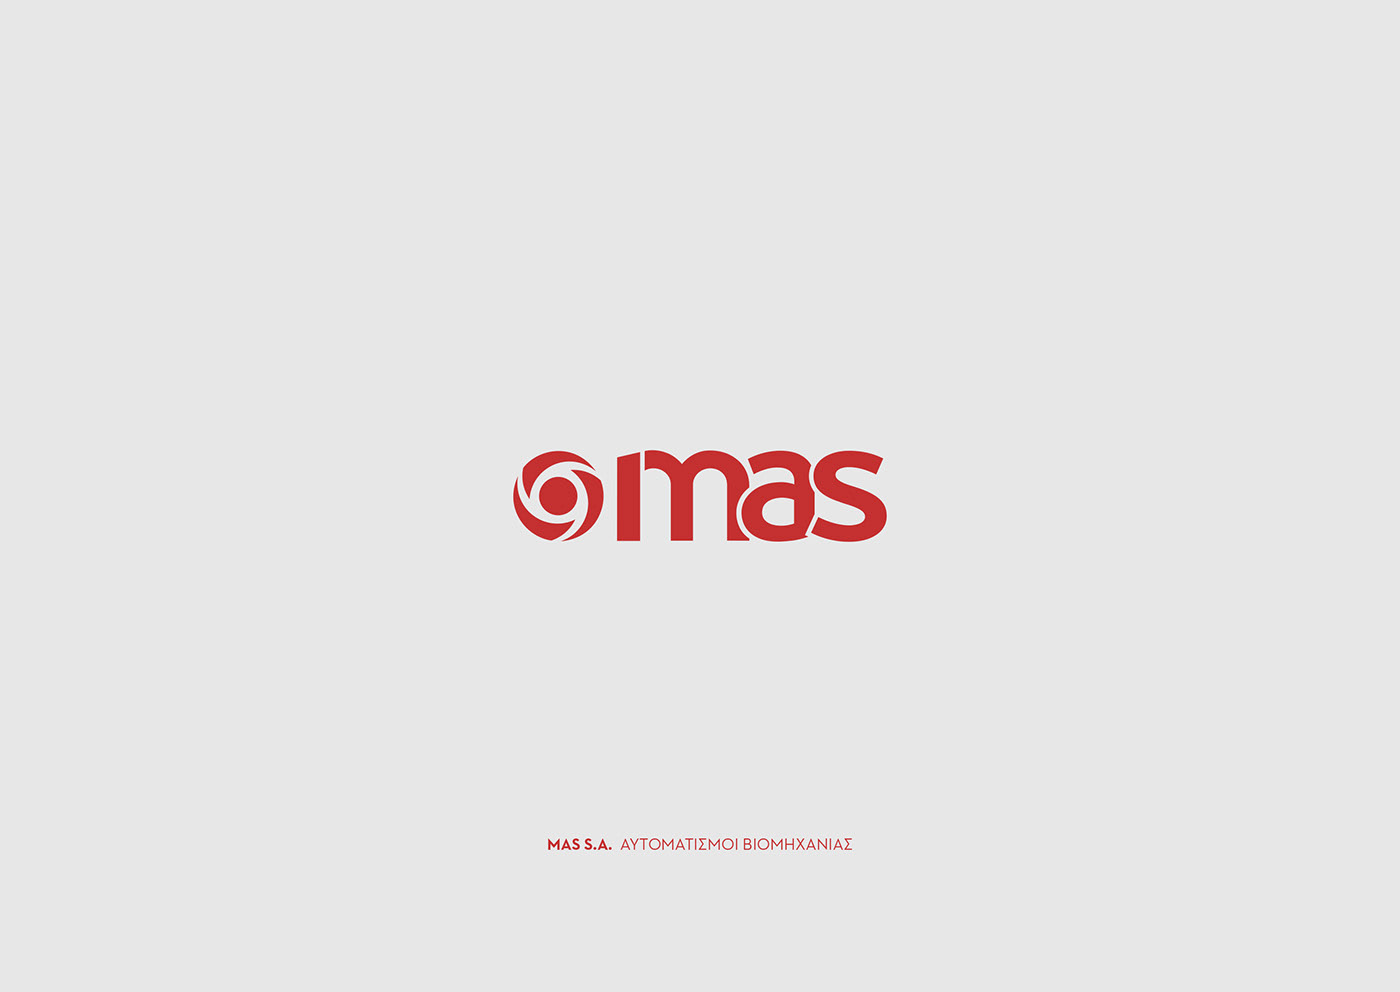 Logo Design logofolio logos